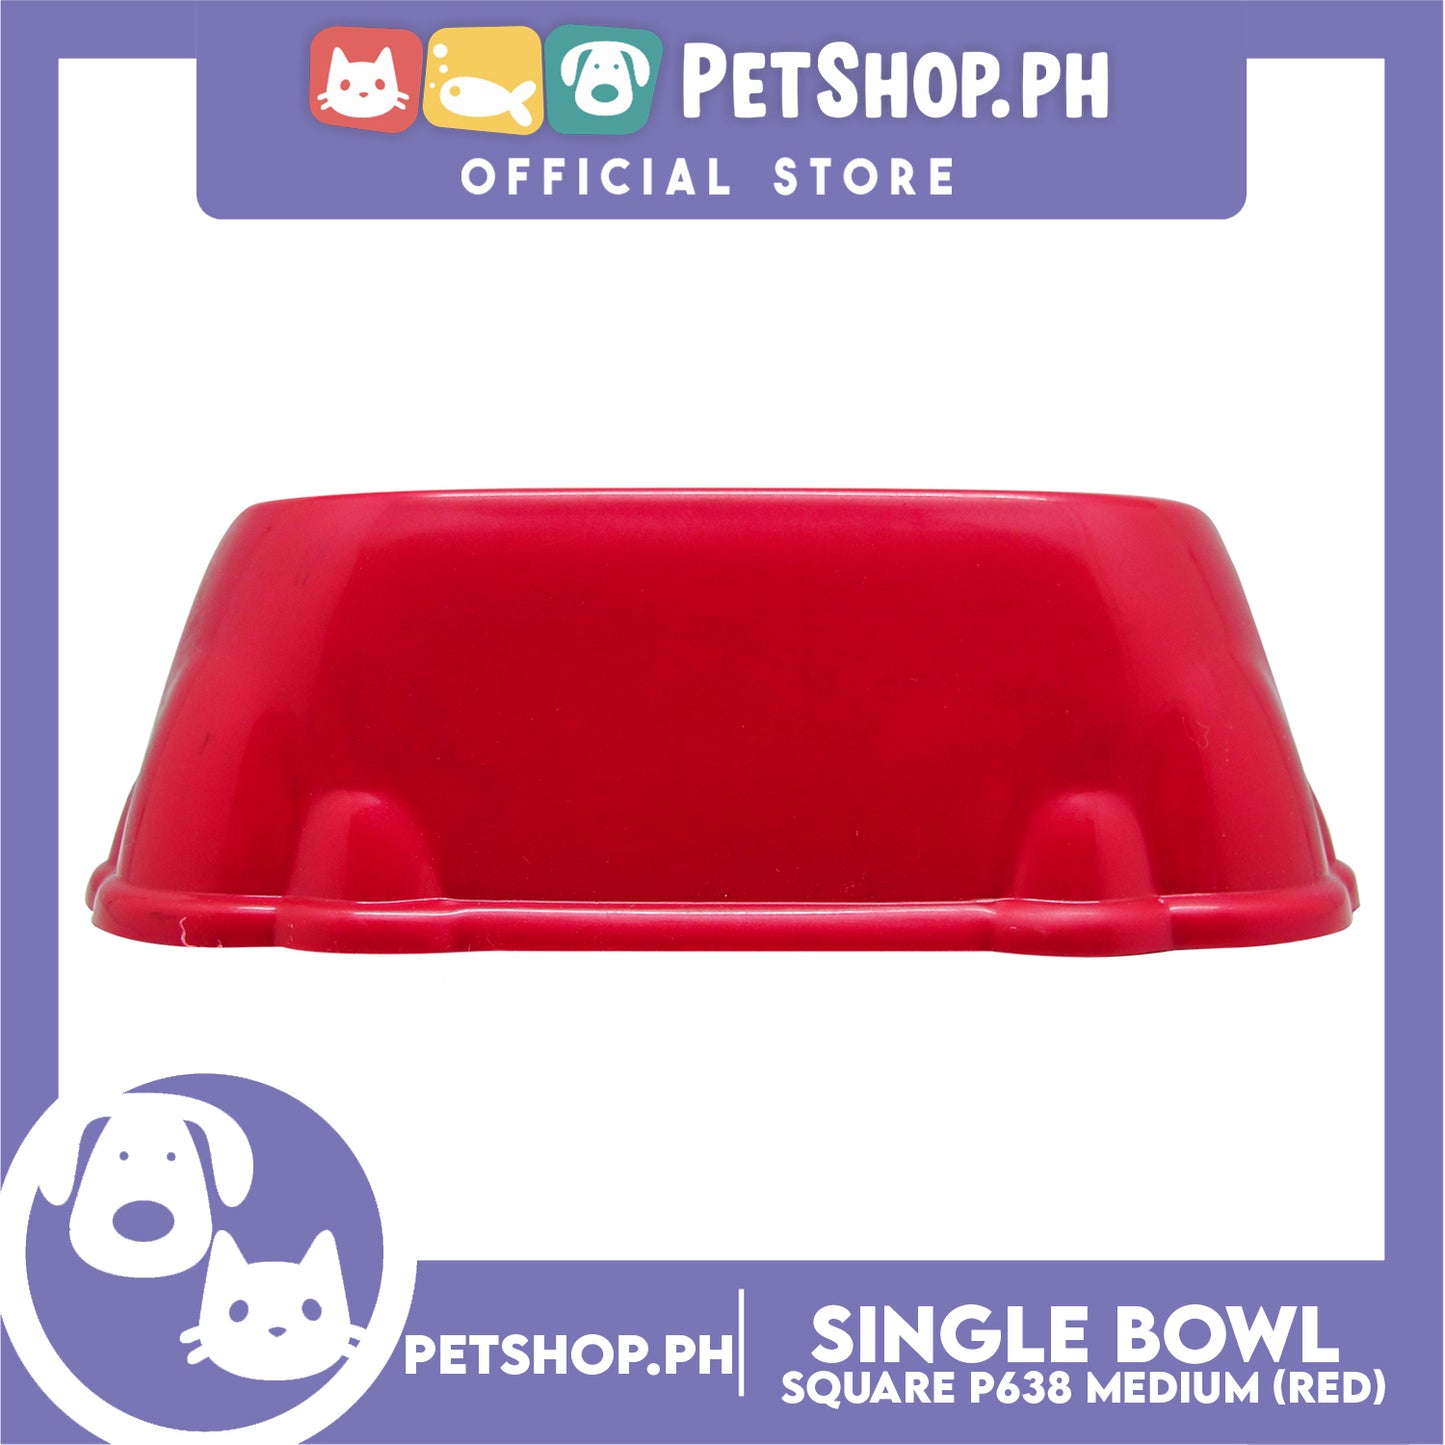 P638 Square Single Bowl Medium Red